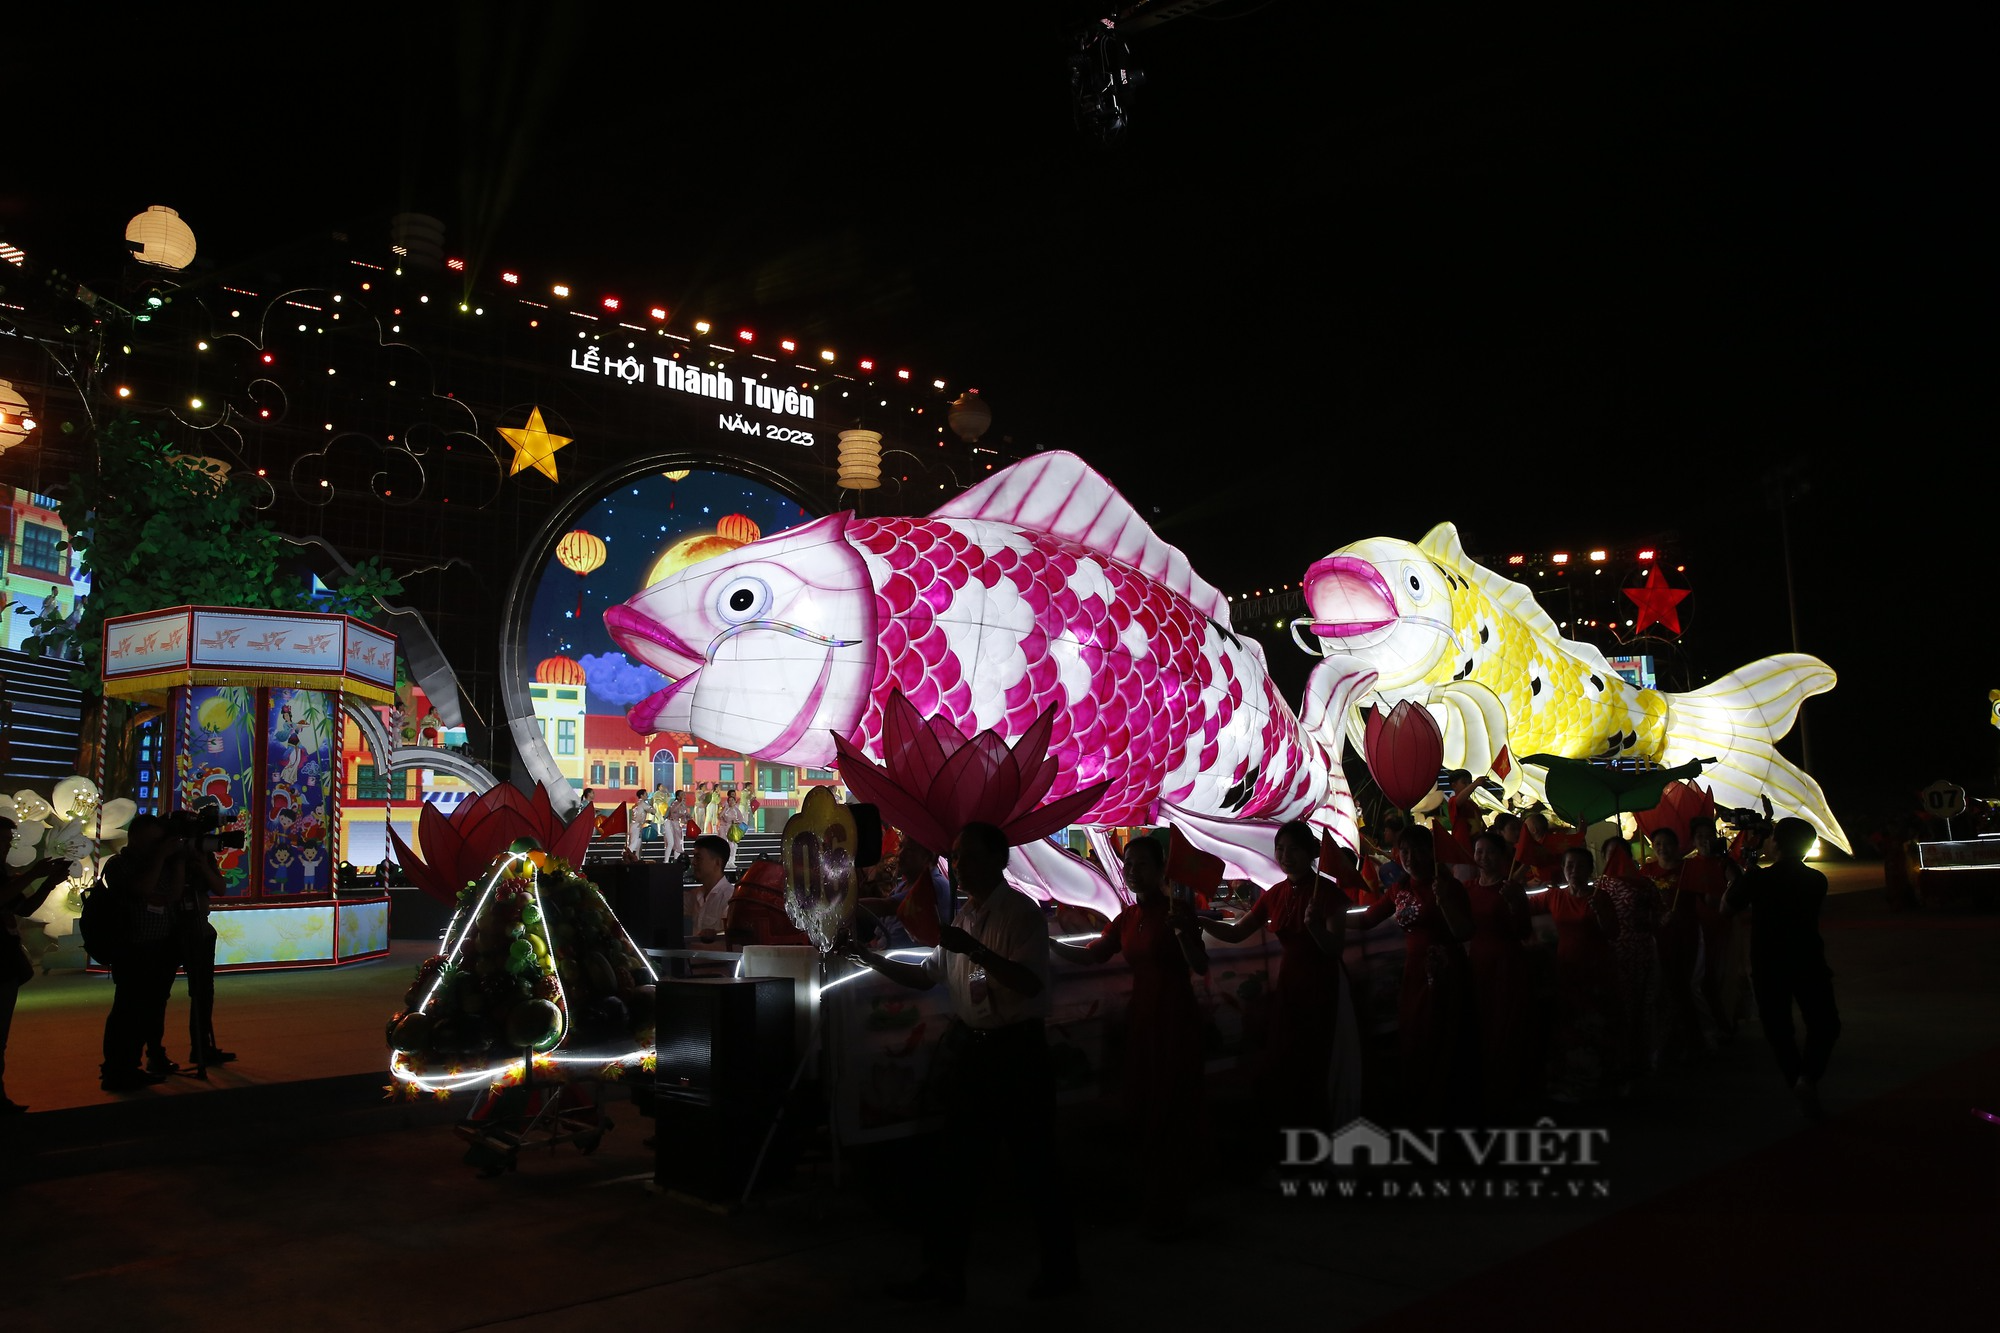 Chiêm ngưỡng những mô hình đèn Trung thu khổng lồ tại Lễ hội thành Tuyên năm 2023 - Ảnh 4.